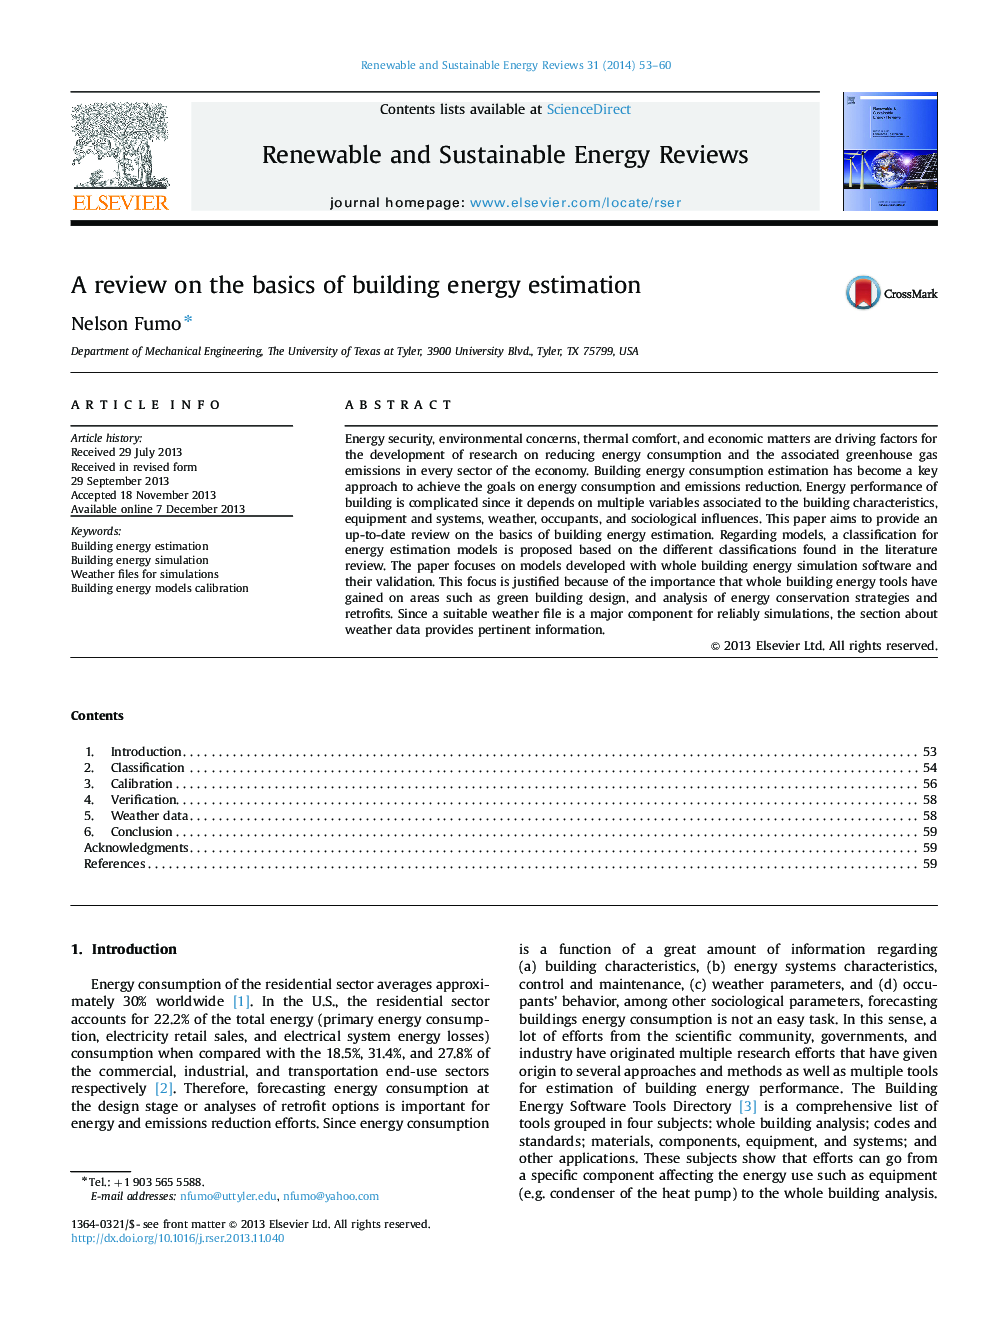 بررسی اصول اولیه برآورد انرژی ساختمان 